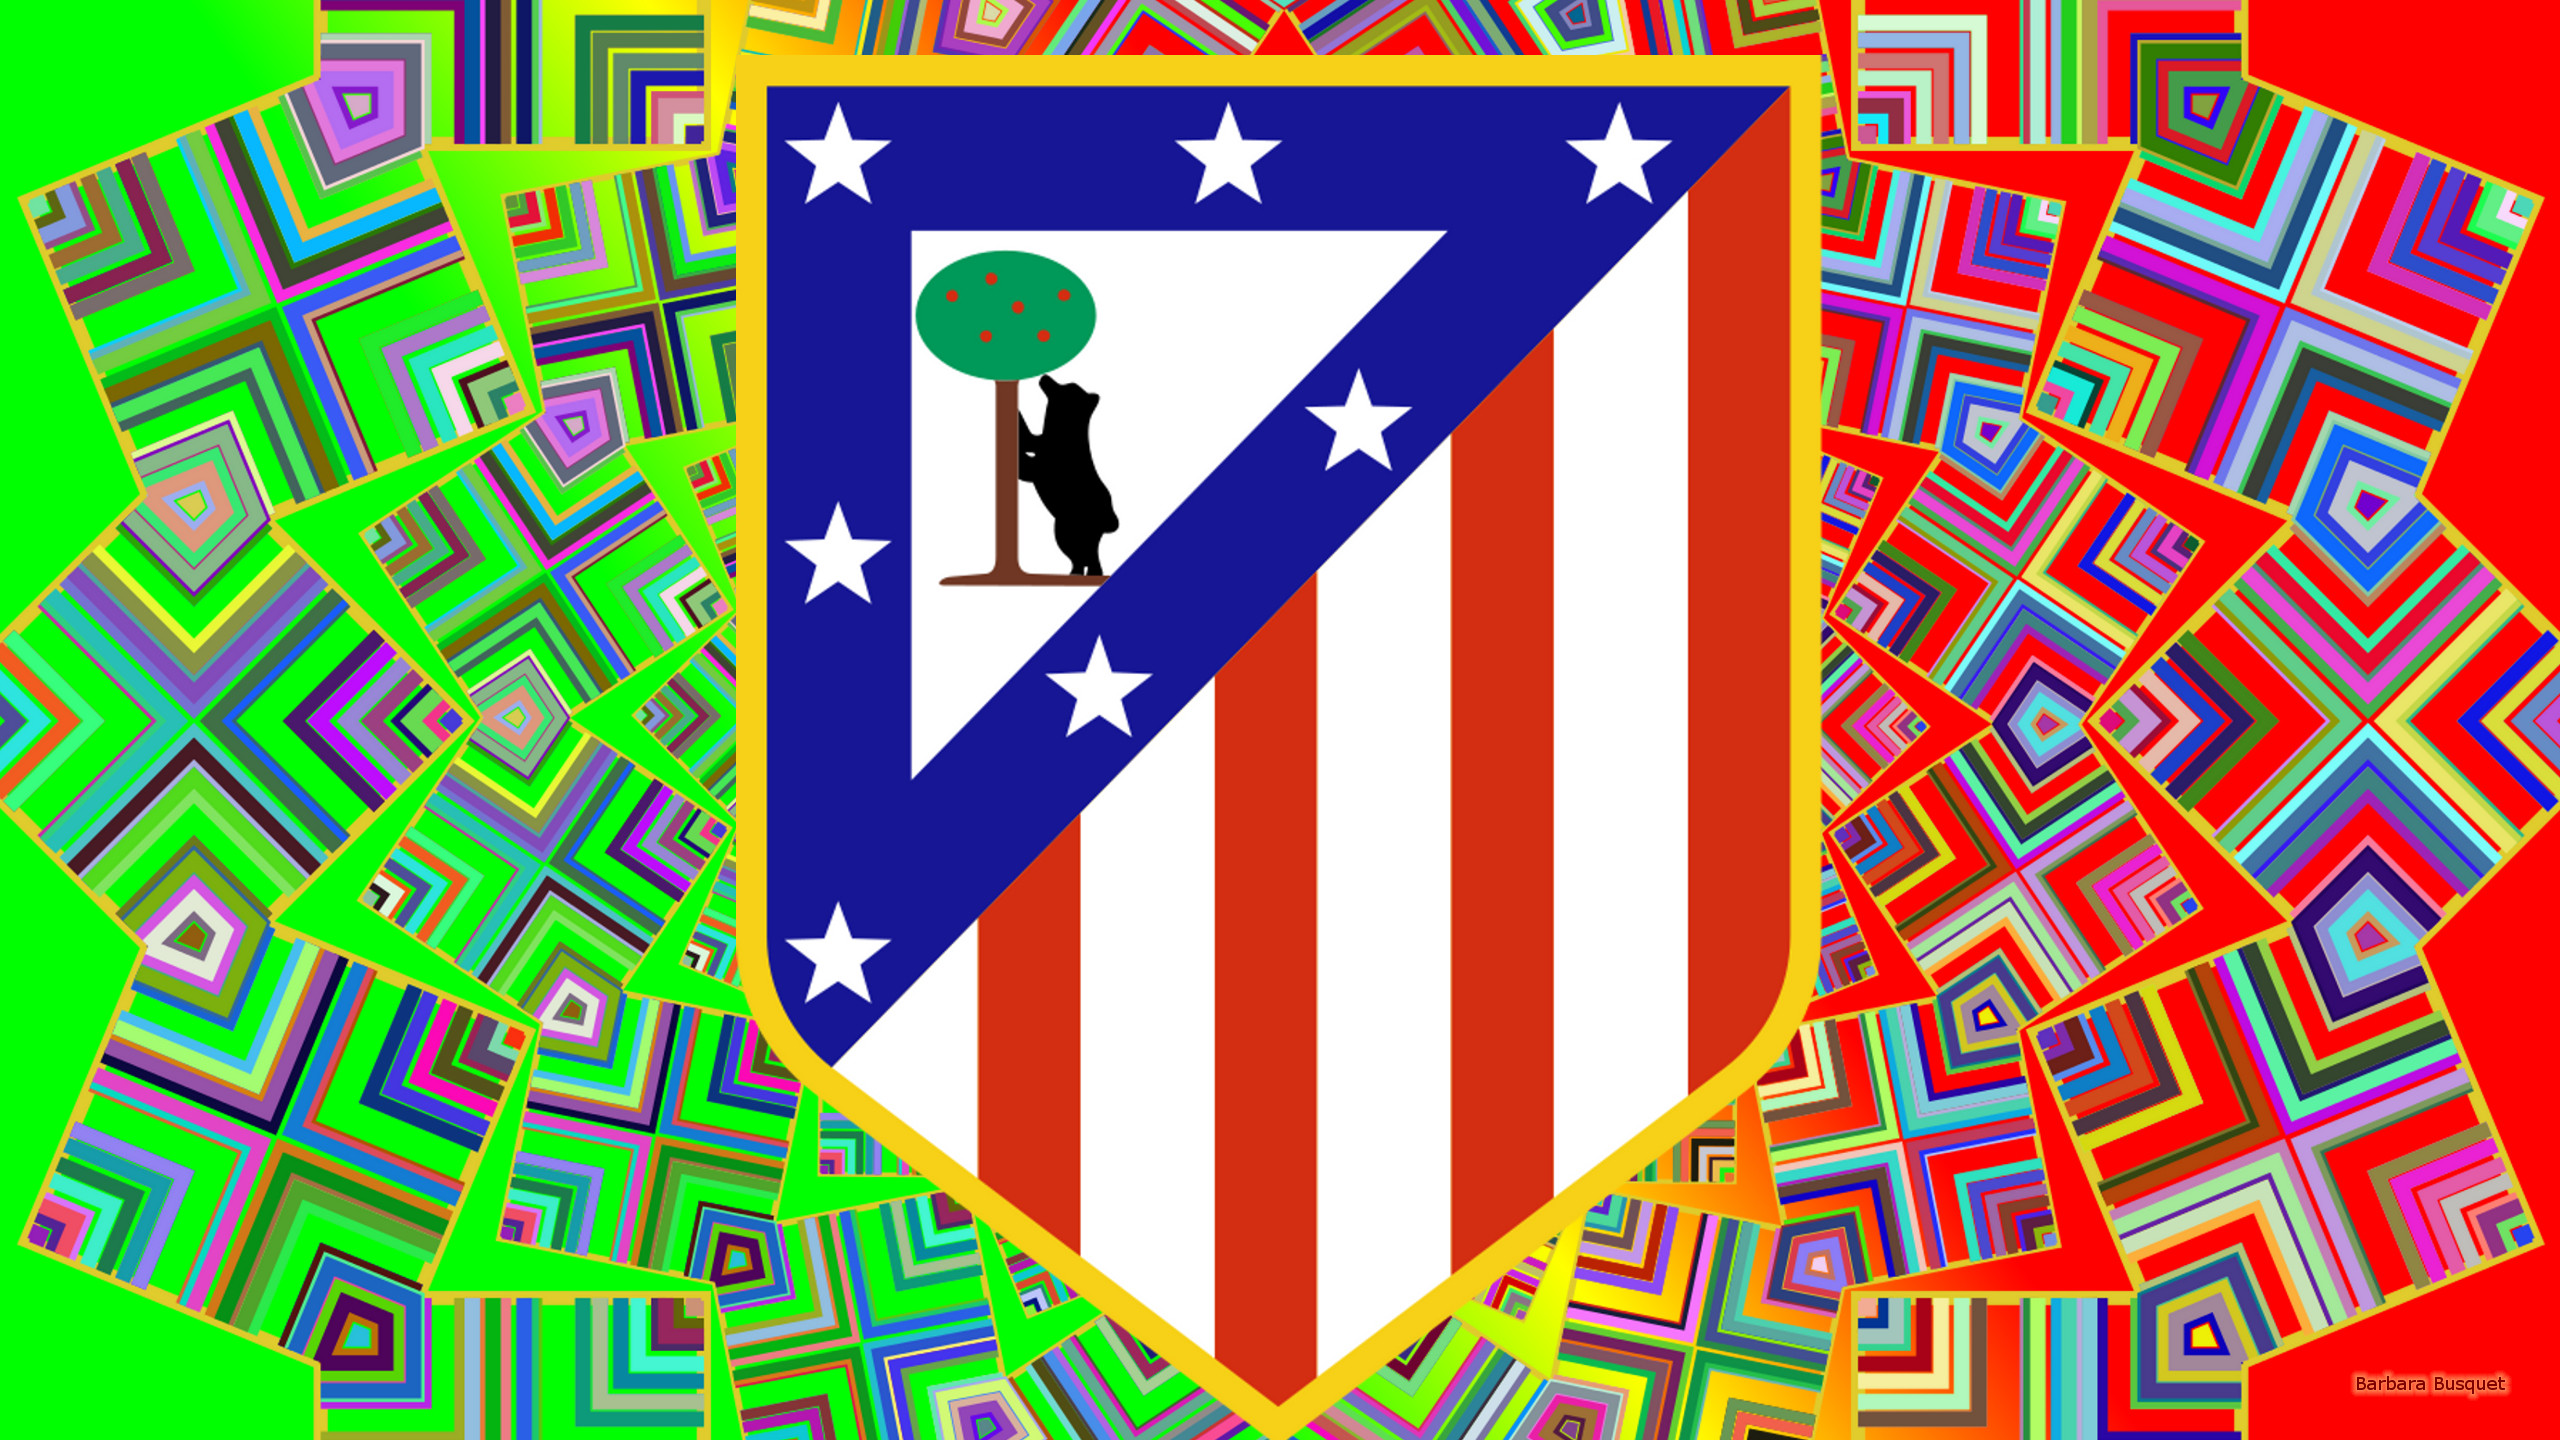 Descarga gratis la imagen Fútbol, Logo, Emblema, Deporte, Atletico Madrid en el escritorio de tu PC